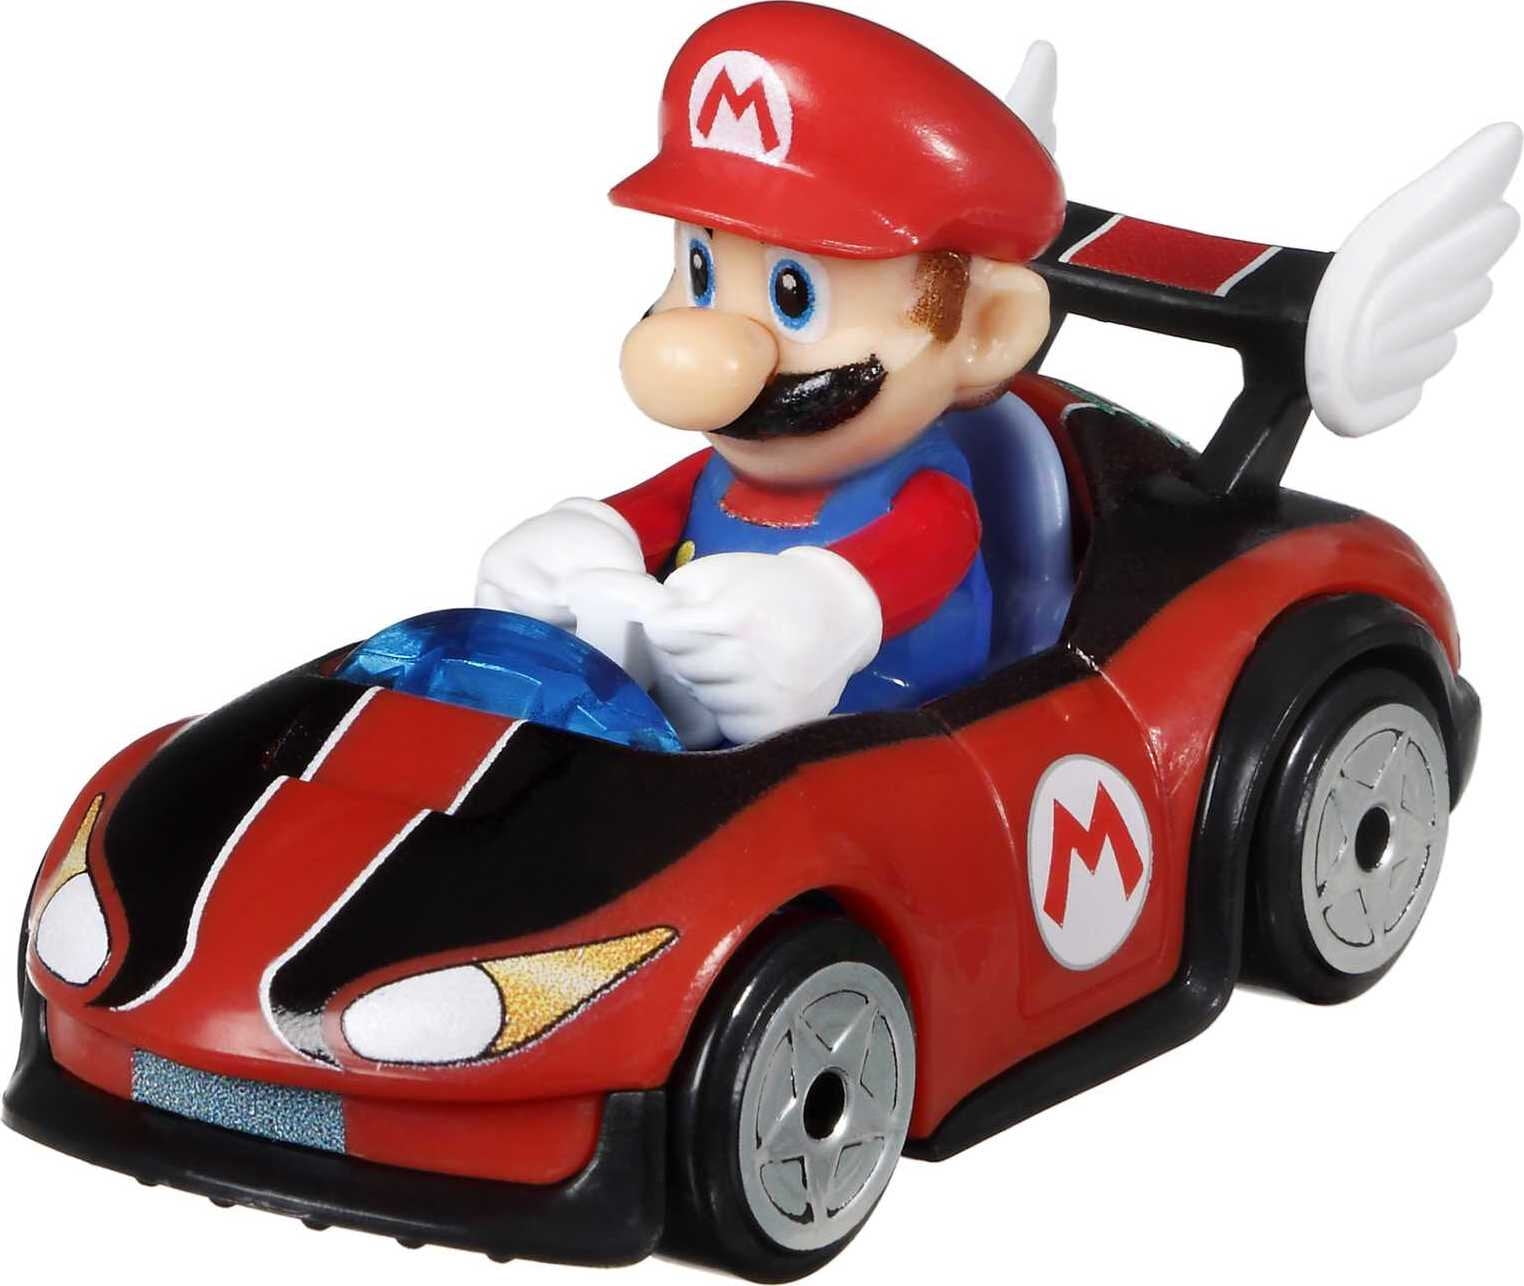 Hot Wheels - Pack 4 Véhicules Mario Kart - Modèle Aléatoire